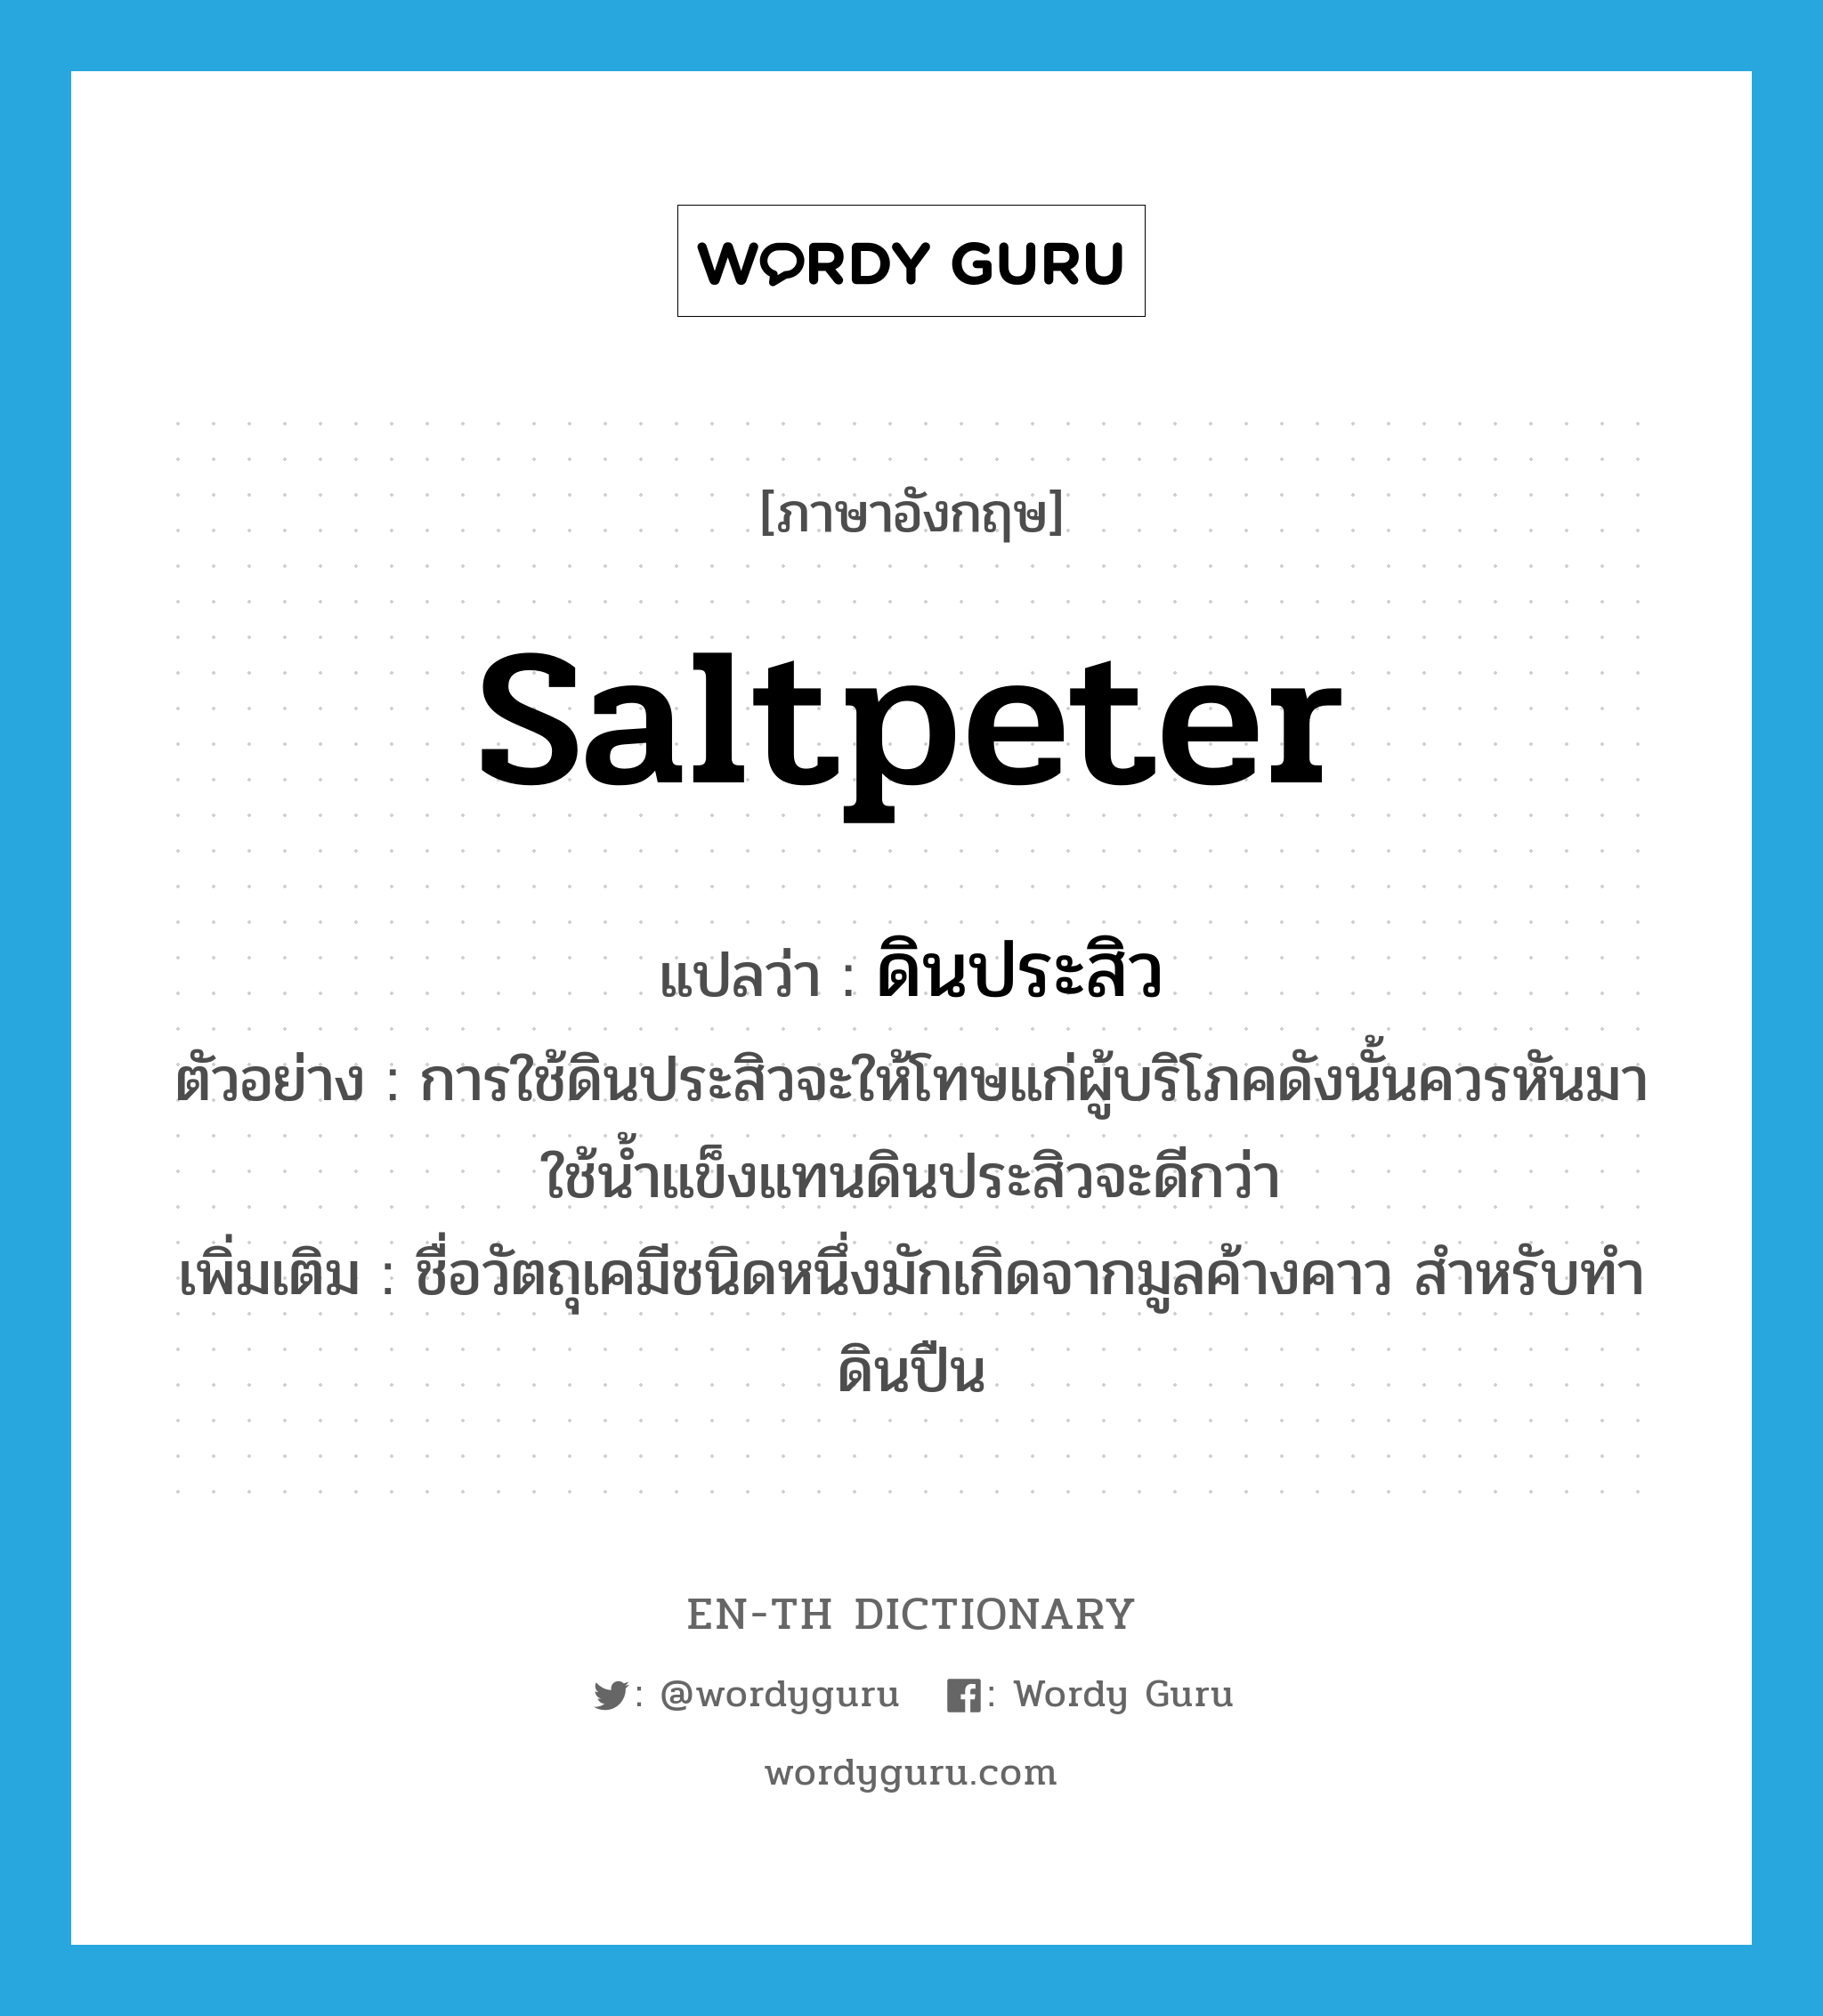 saltpeter แปลว่า?, คำศัพท์ภาษาอังกฤษ saltpeter แปลว่า ดินประสิว ประเภท N ตัวอย่าง การใช้ดินประสิวจะให้โทษแก่ผู้บริโภคดังนั้นควรหันมาใช้น้ำแข็งแทนดินประสิวจะดีกว่า เพิ่มเติม ชื่อวัตถุเคมีชนิดหนึ่งมักเกิดจากมูลค้างคาว สำหรับทำดินปืน หมวด N